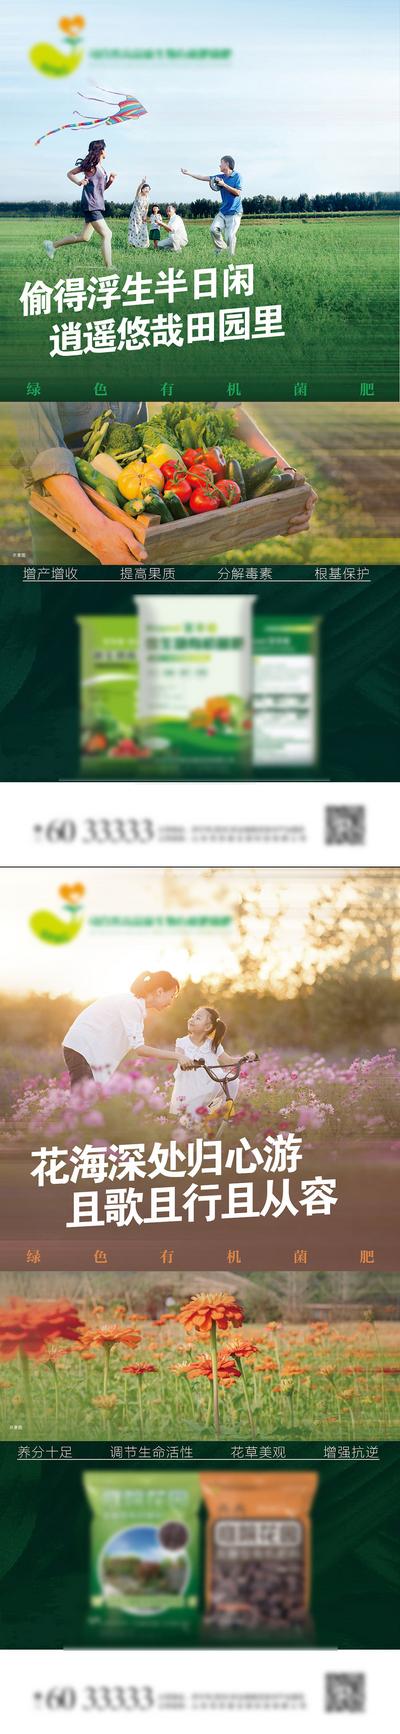 南门网 海报 农业 化肥 菌肥 产品 宣传 果蔬 庭院 植物